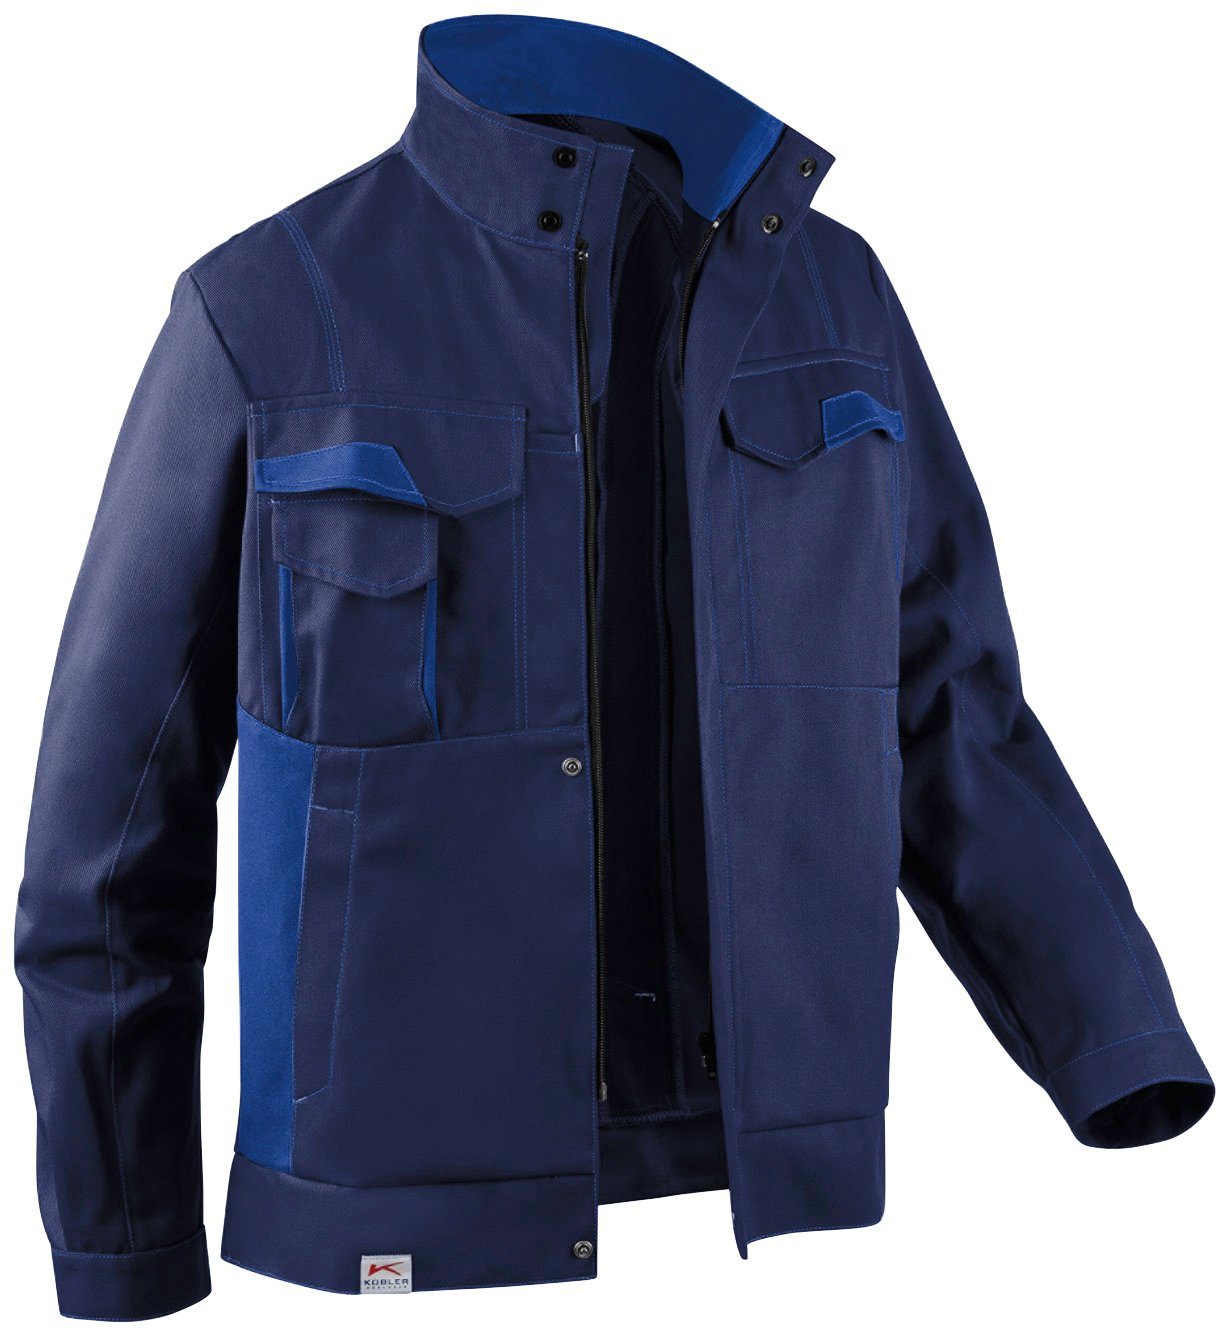 Kübler Arbeitsjacke Image Dress New Design mit 7 Taschen dunkelblau-blau